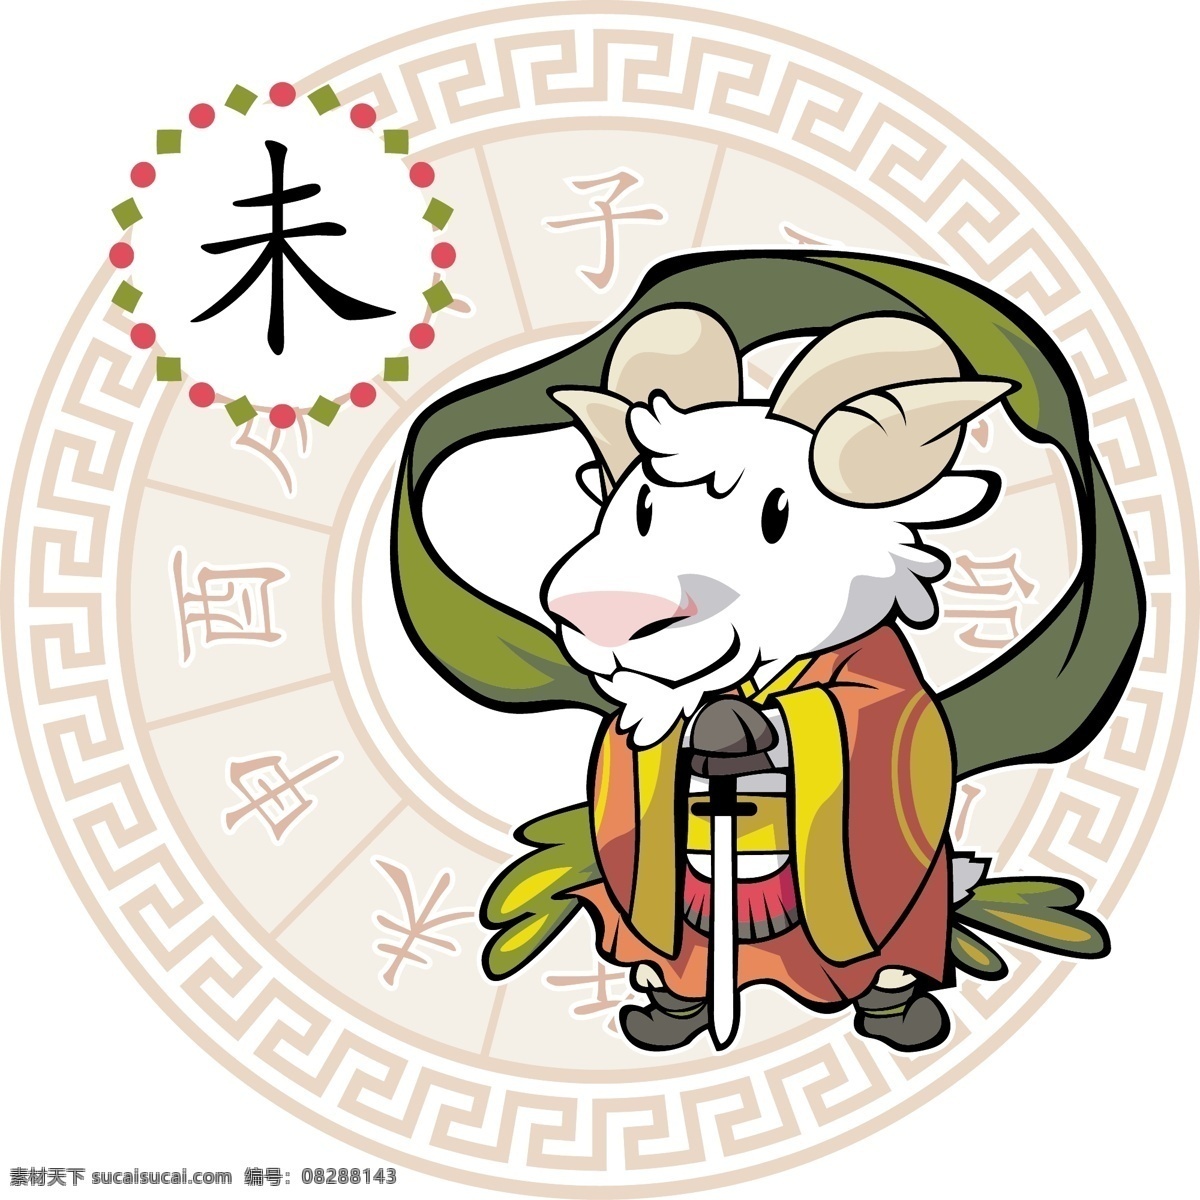 卡通 十 二生 销 八卦图 2015羊年 卡通羊 拿刀的羊 节日素材